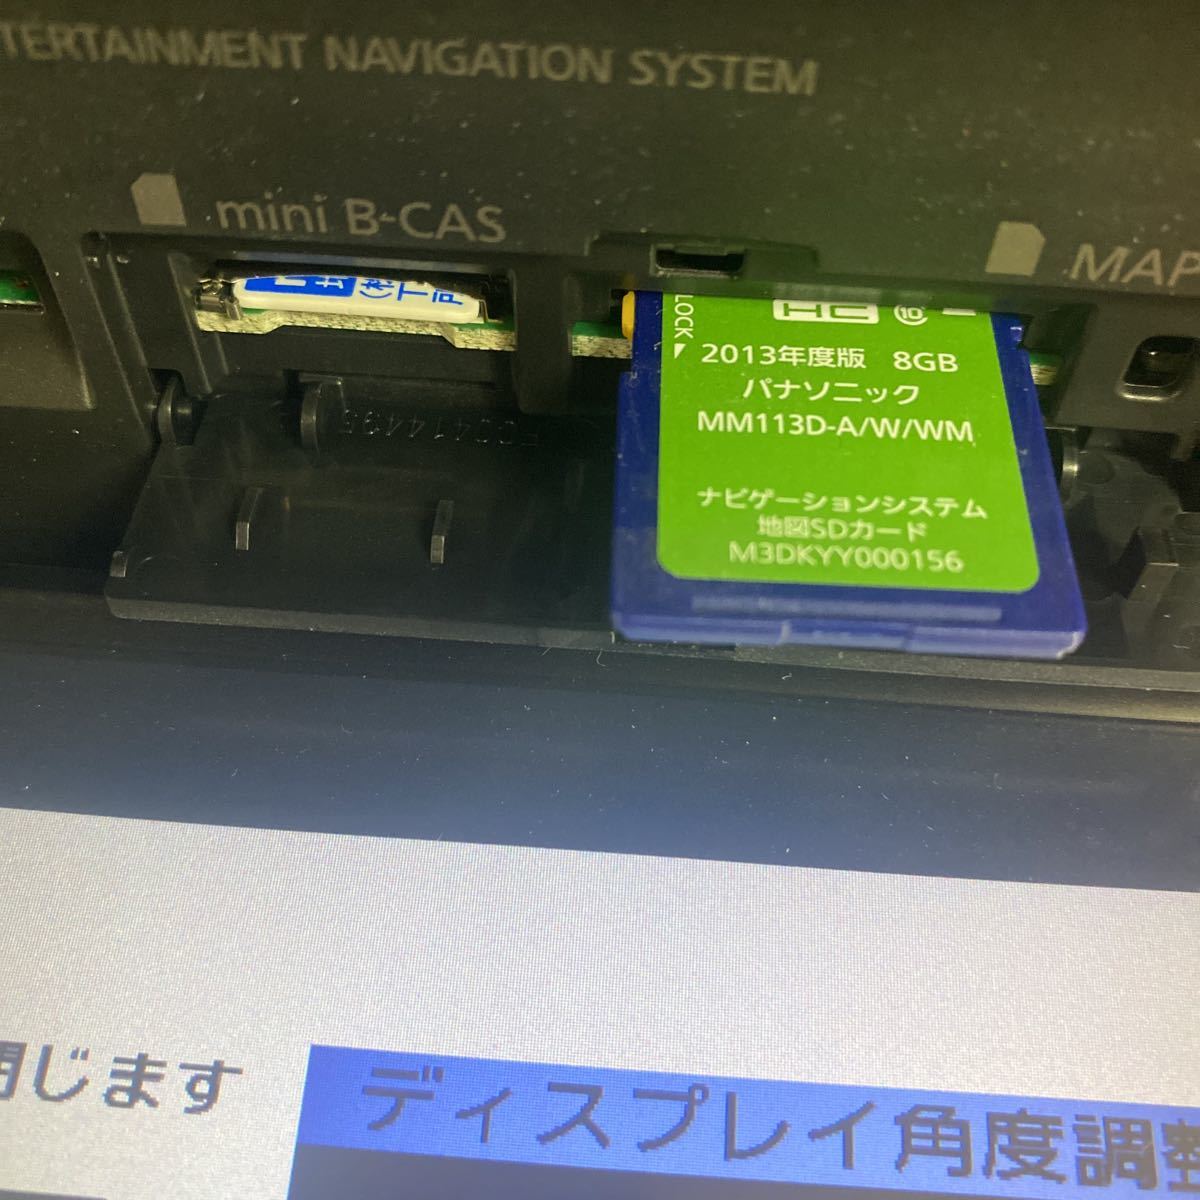  Nissan navi Panasonic MM113D-W камера заднего обзора комплект Note Cube другой бесплатная доставка по всей стране 